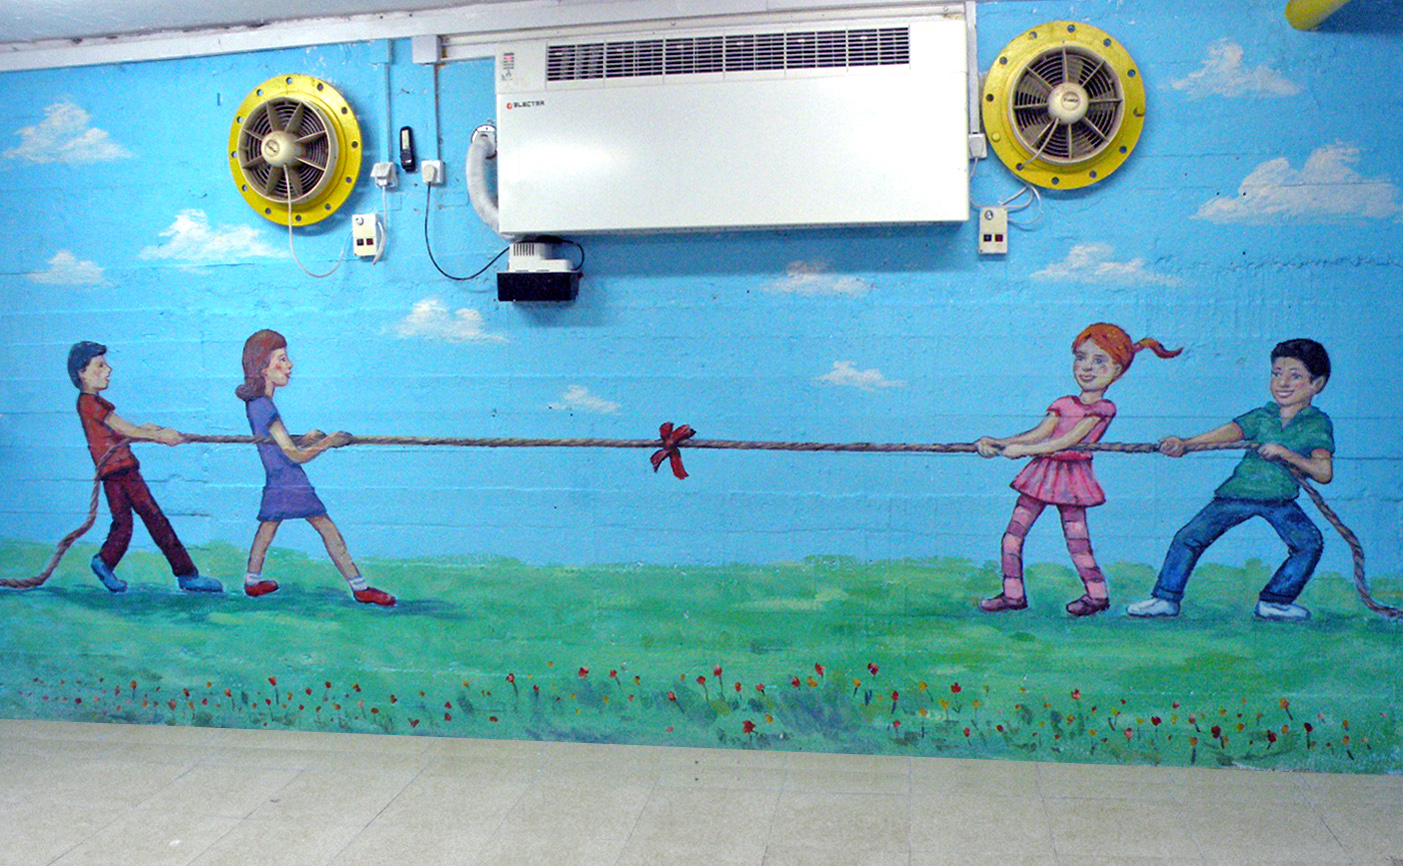 ציורי קיר של ילדים שמשחקים במשיכת חבל